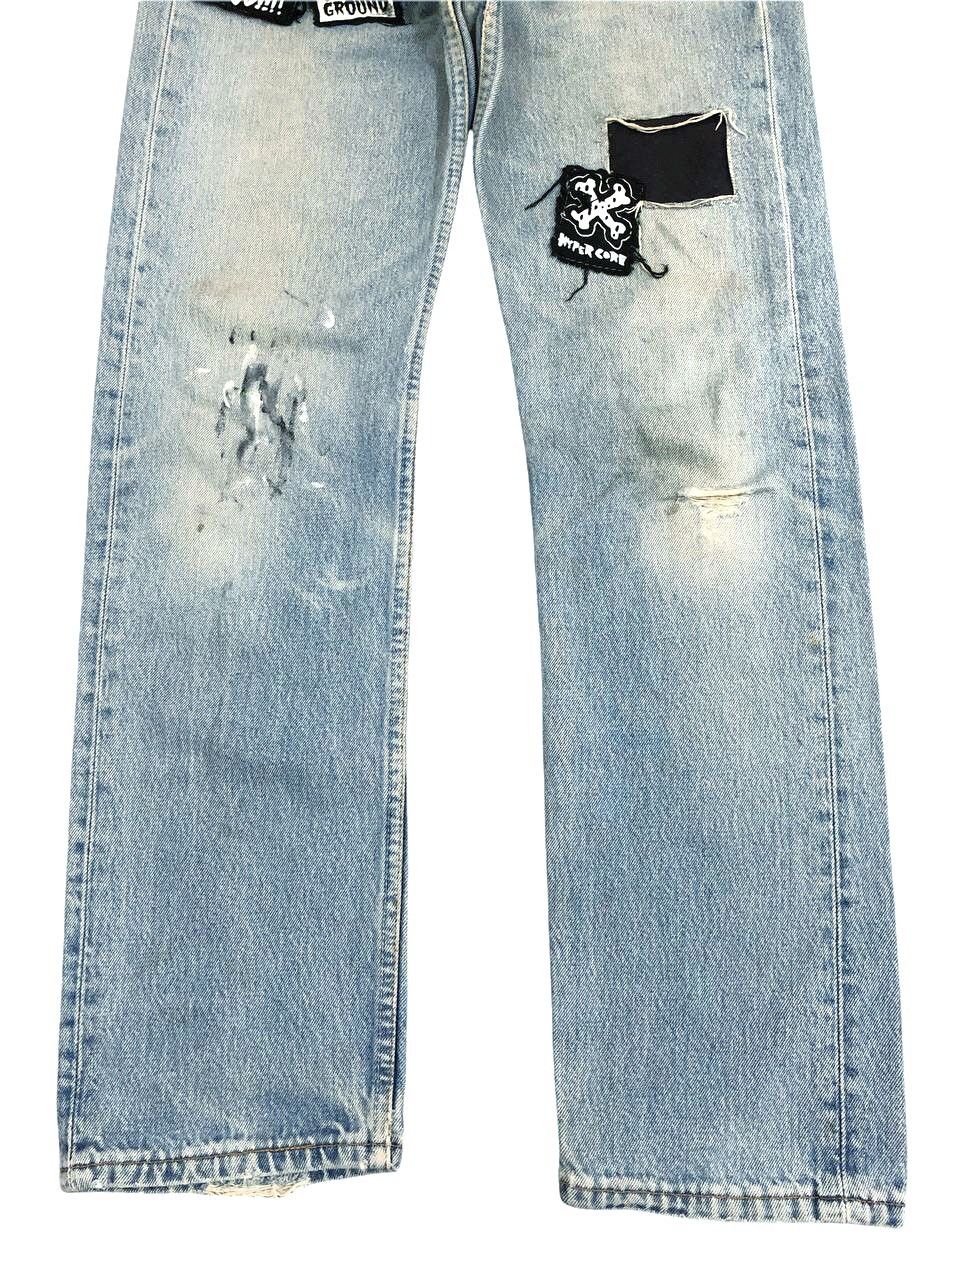 Vintage Vintage Levis Distressed Custom Patch Punk Jeans Size US 27 - 5 Thumbnail